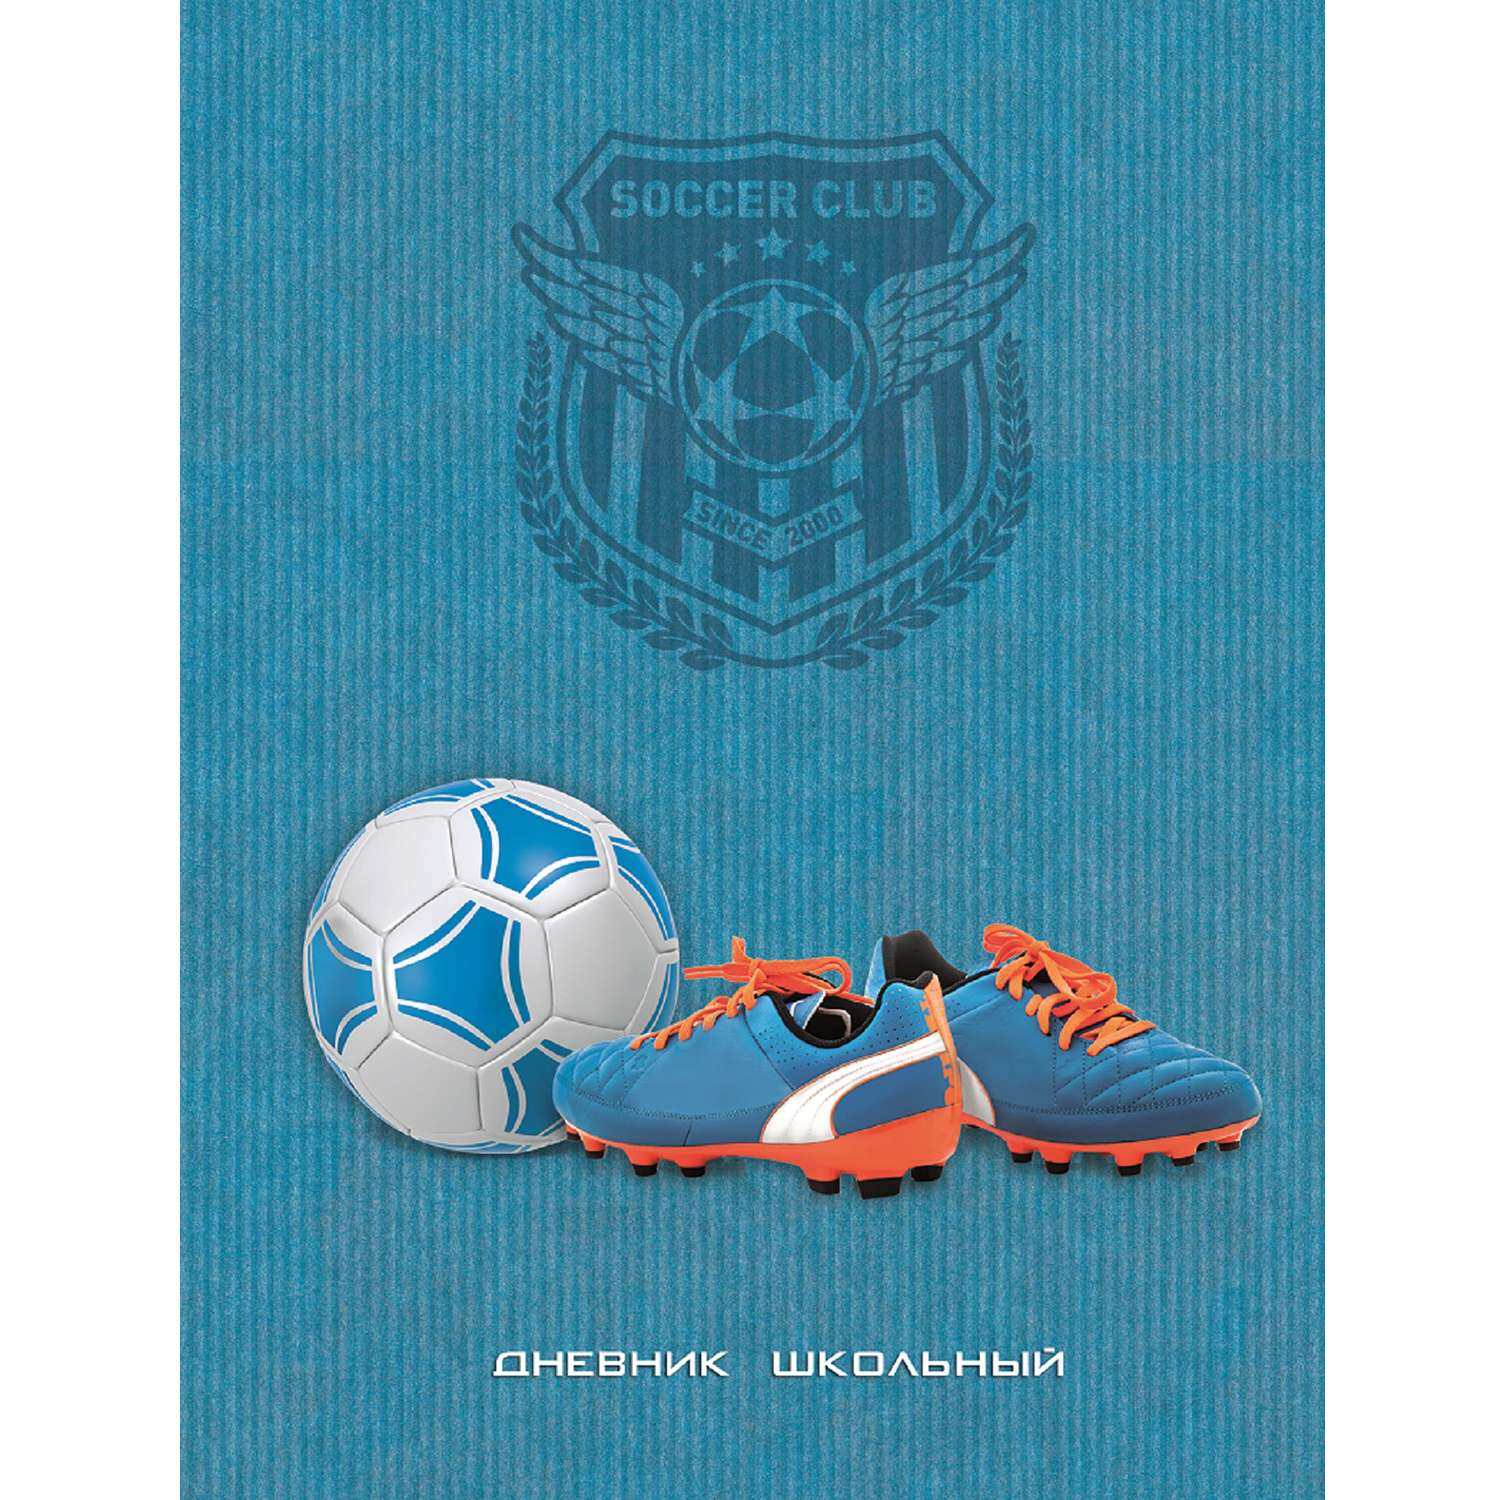 Дневник Феникс + Футбол (синий) - фото 1